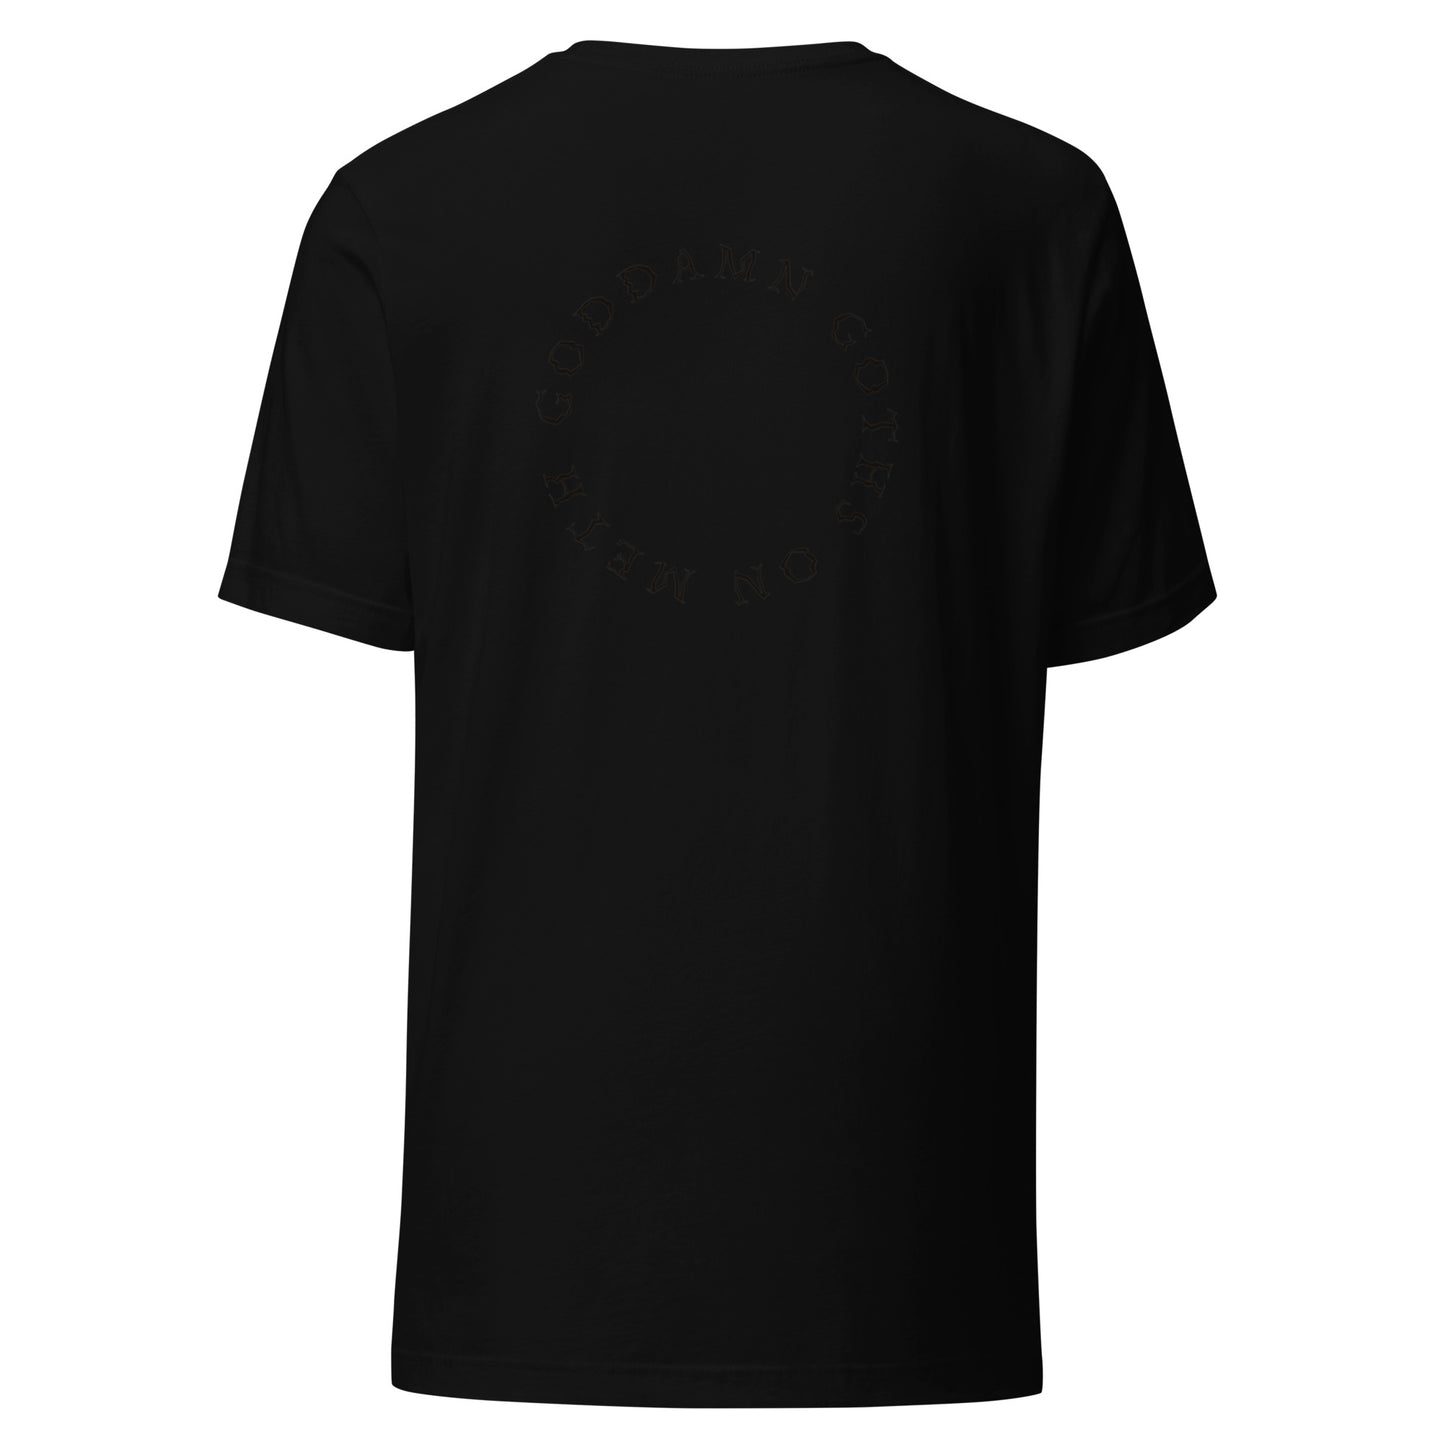 SCREWTAPE SINGLES - Unisex t-shirt